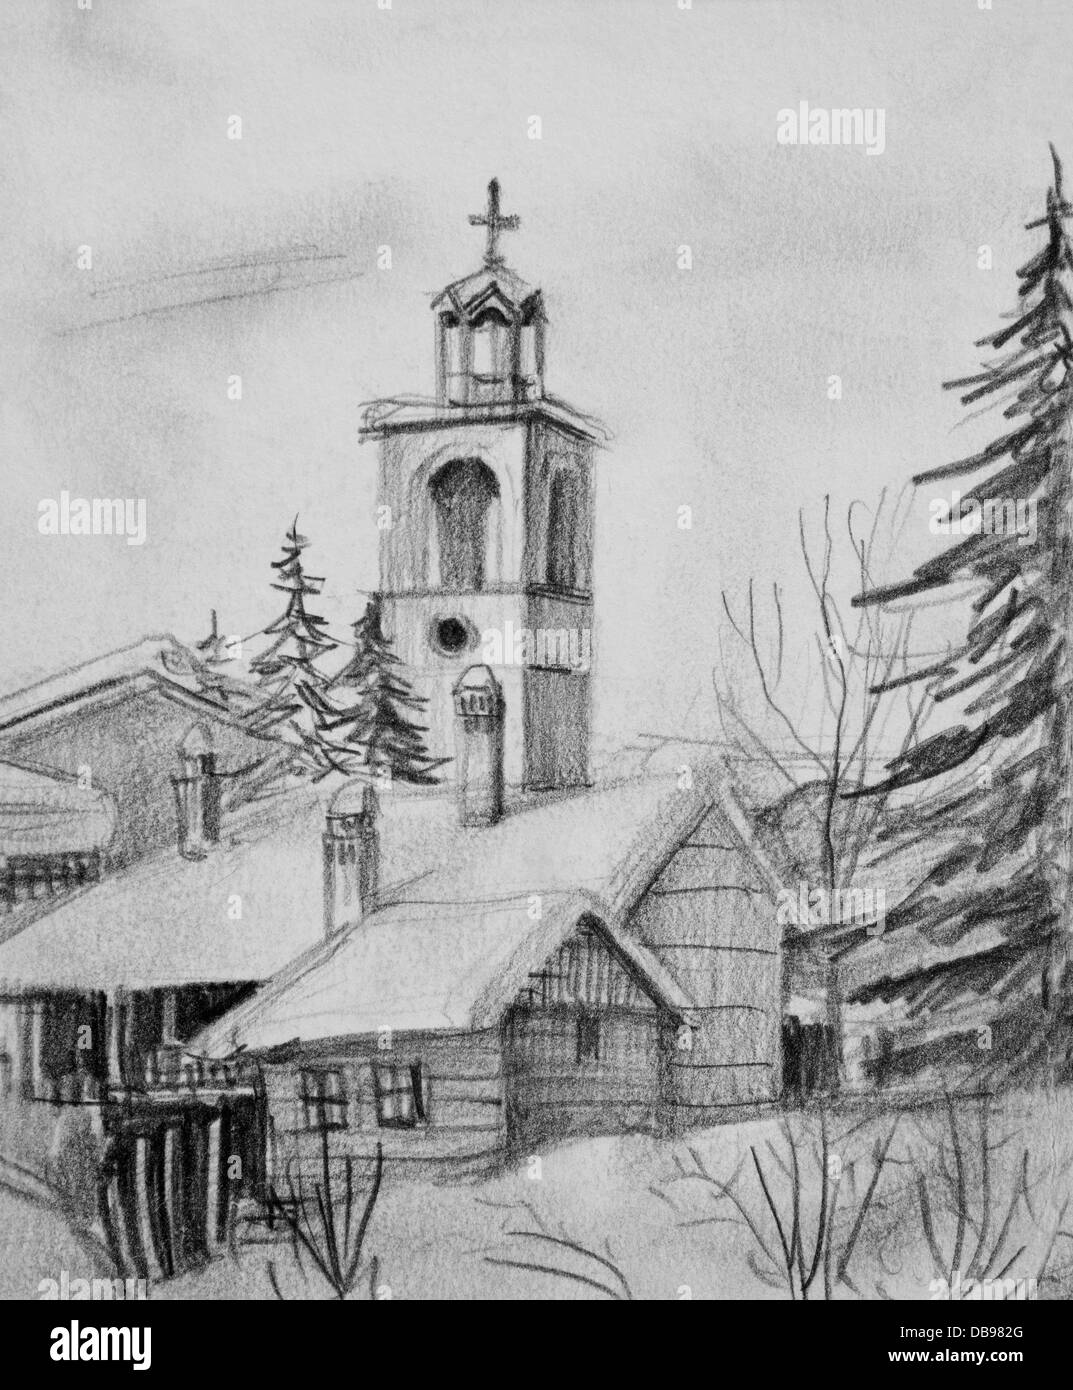 Noir et blanc dessin d'une vieille église en station de ski de Bansko en Bulgarie. Banque D'Images